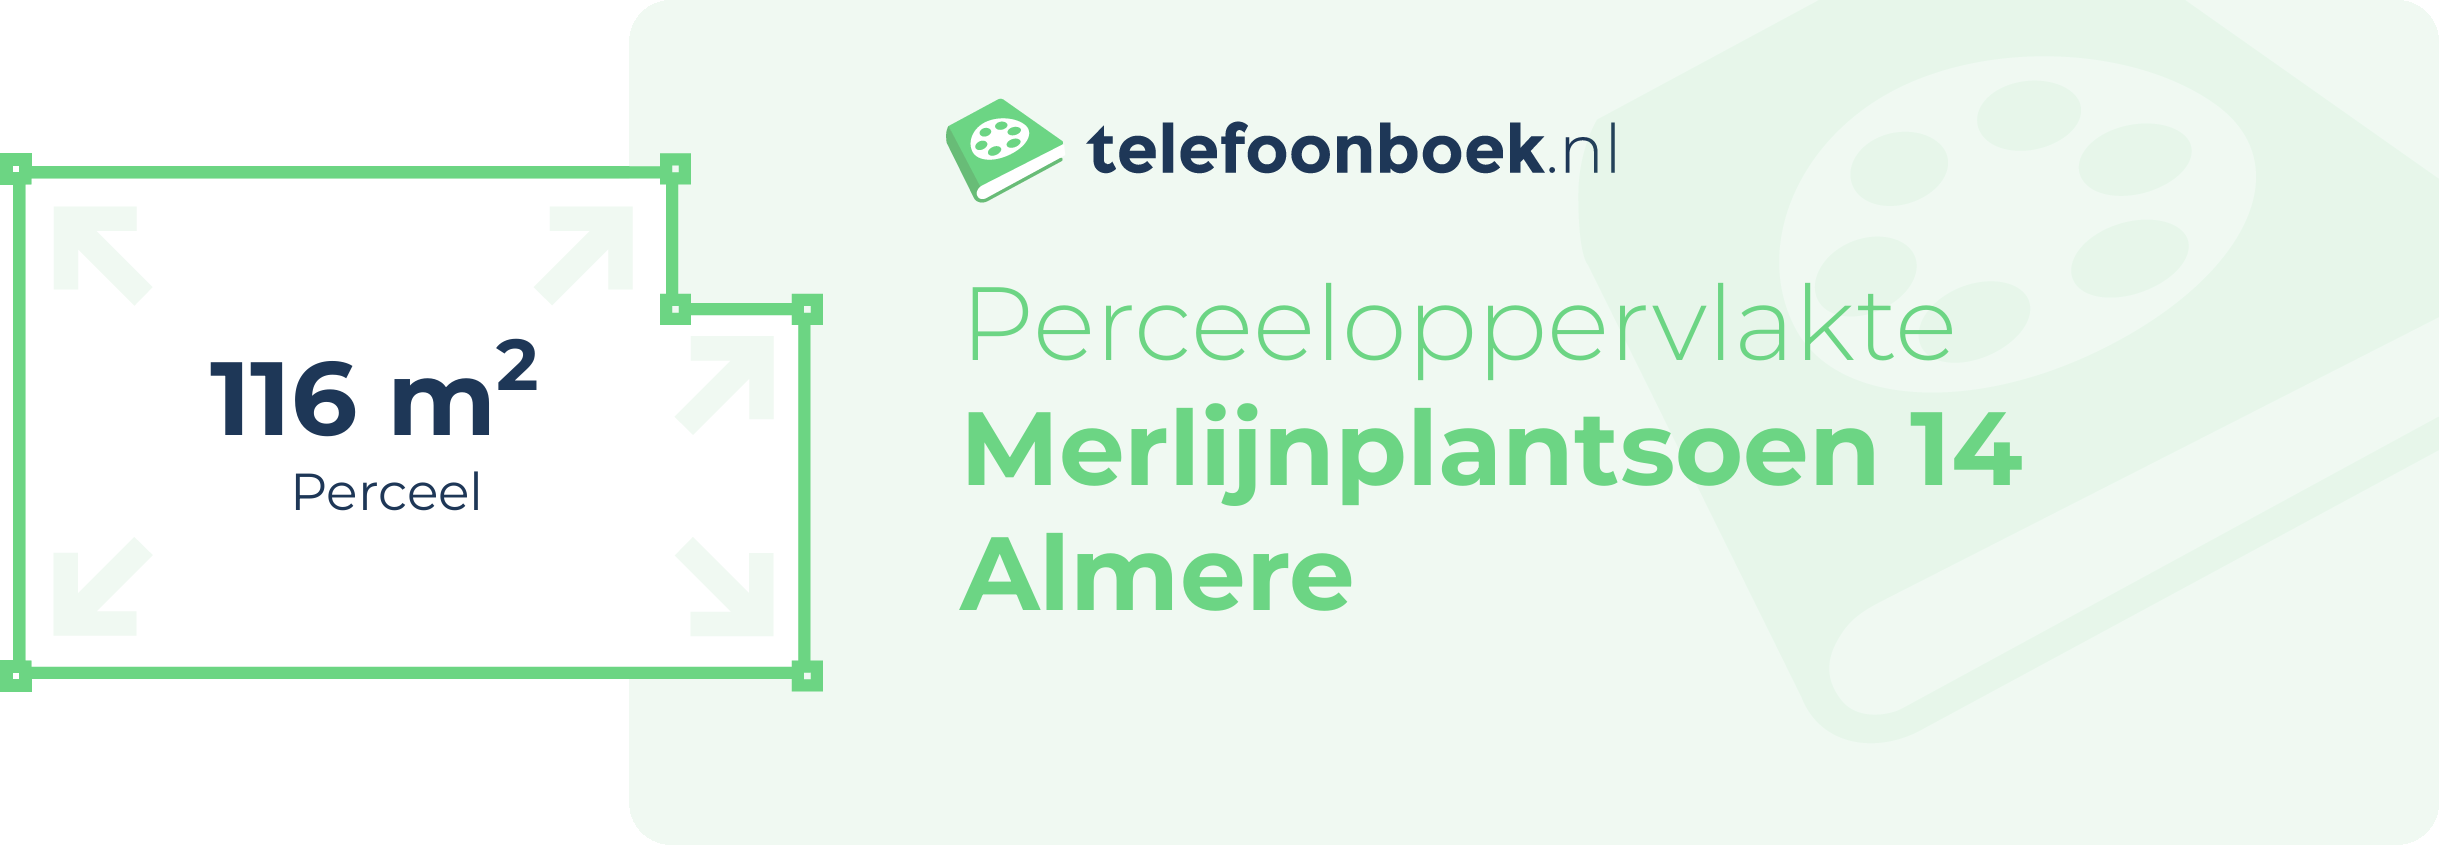 Perceeloppervlakte Merlijnplantsoen 14 Almere